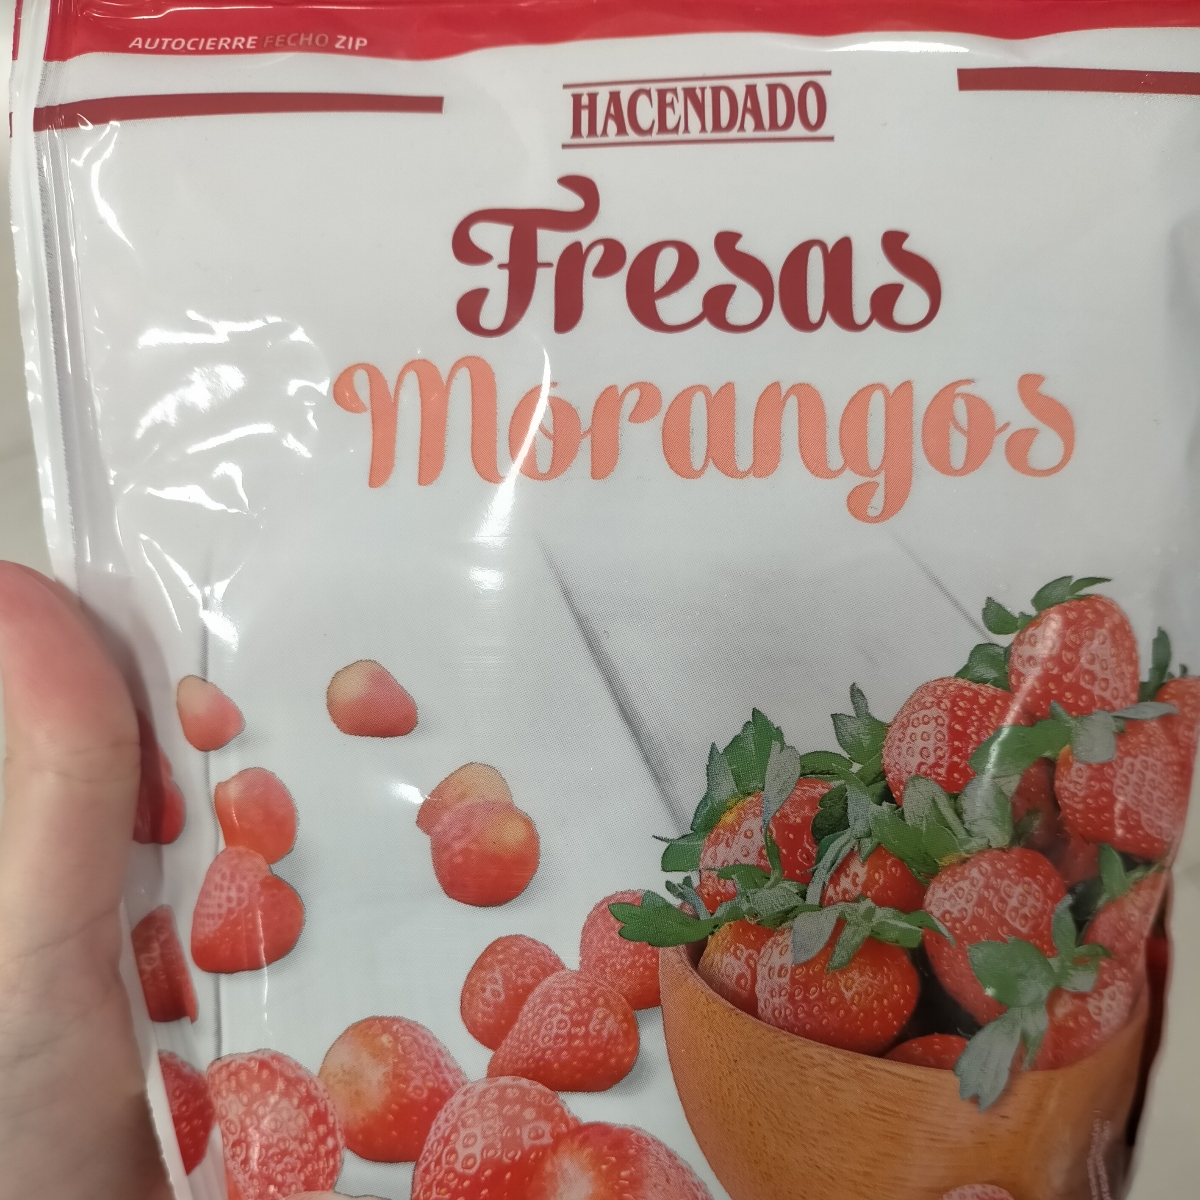 Hacendado Fresas congeladas Reviews | abillion